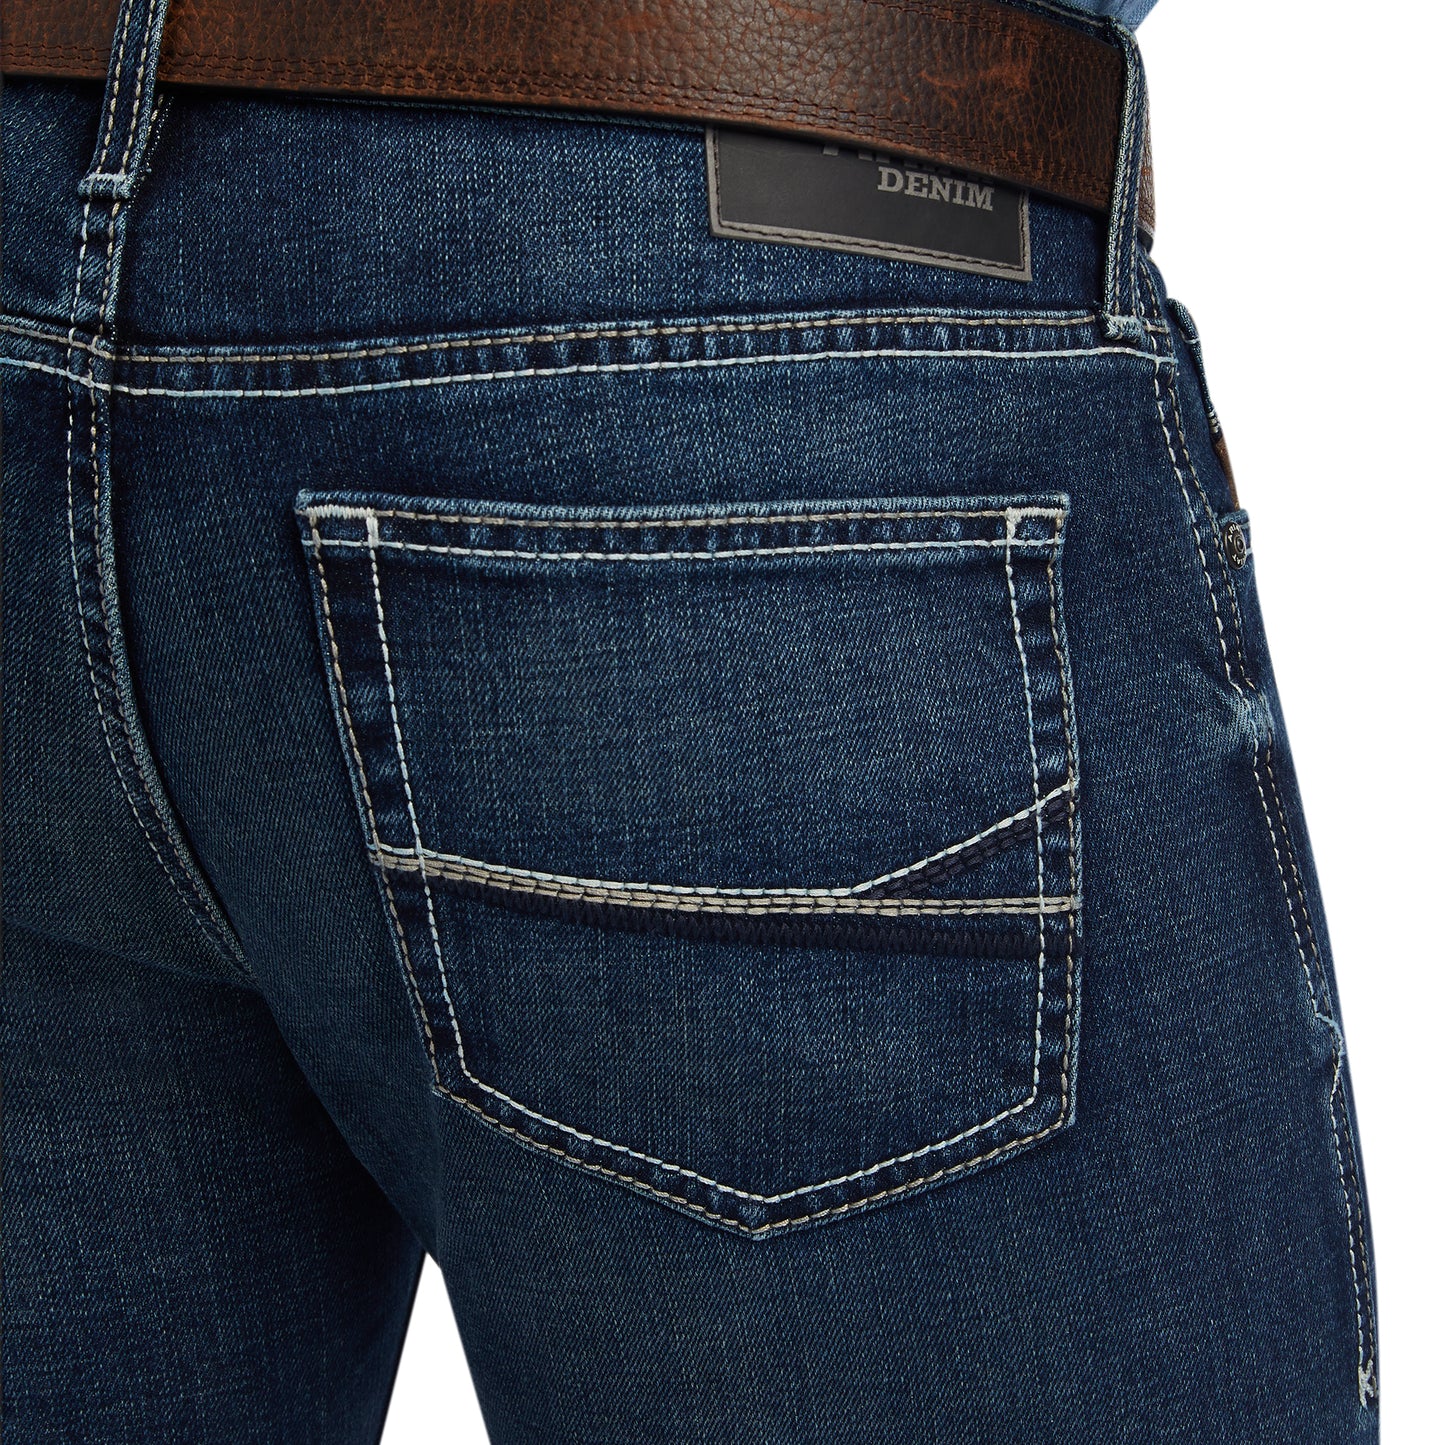 Ariat® Men's M7 Slim Fit Straight Leg Dark Wash Jeans 10041092